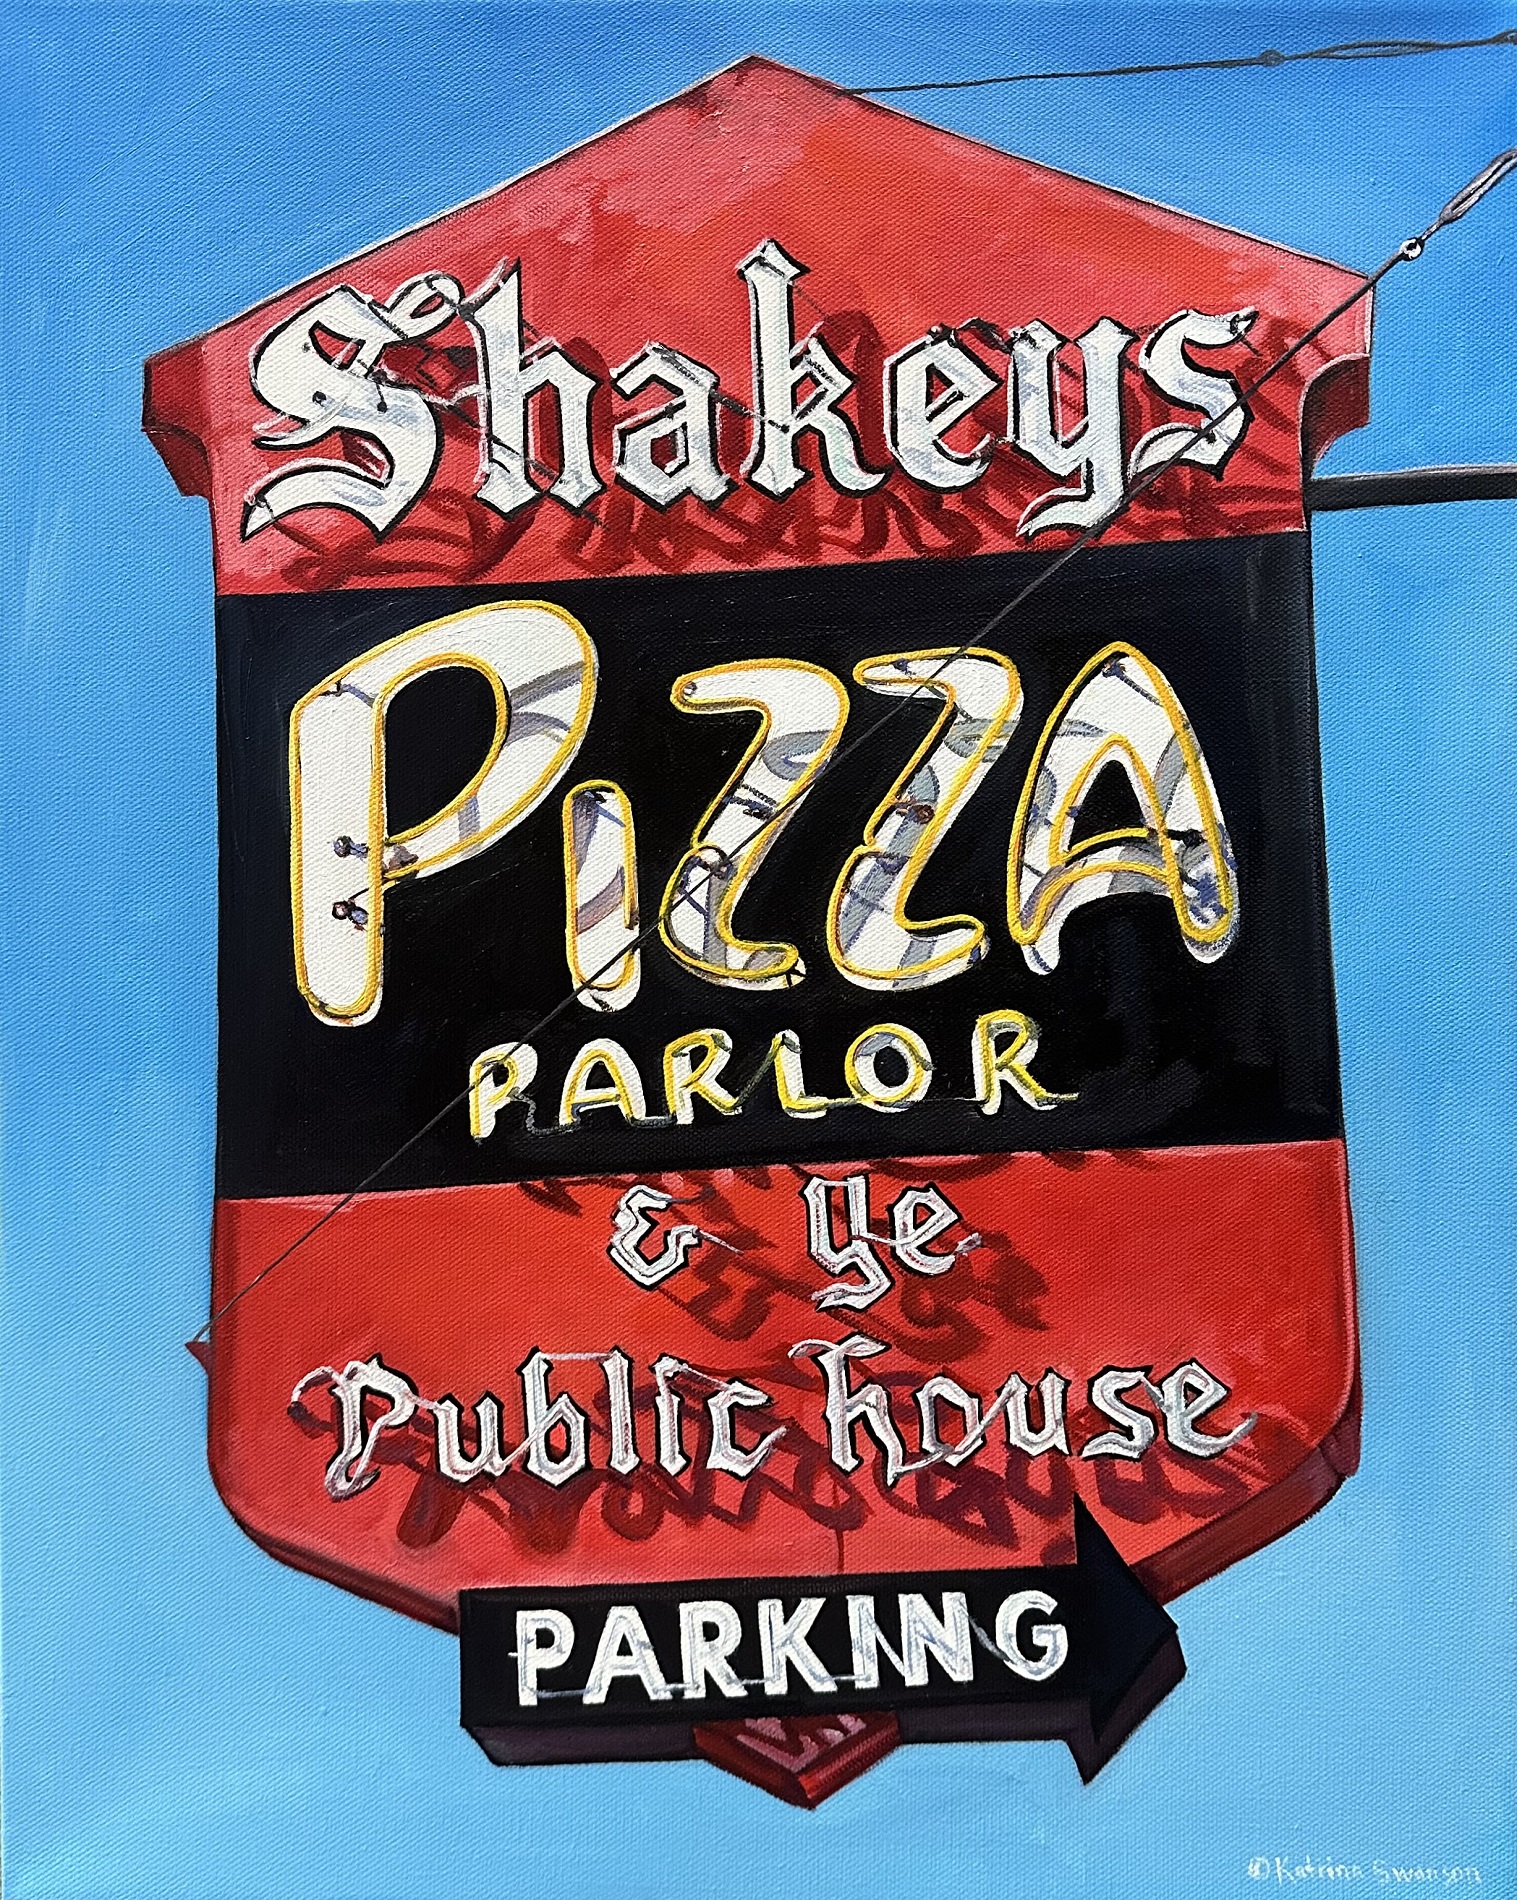 Katrina Swanson, “Shakey’s Pizza”, Oil on canvas